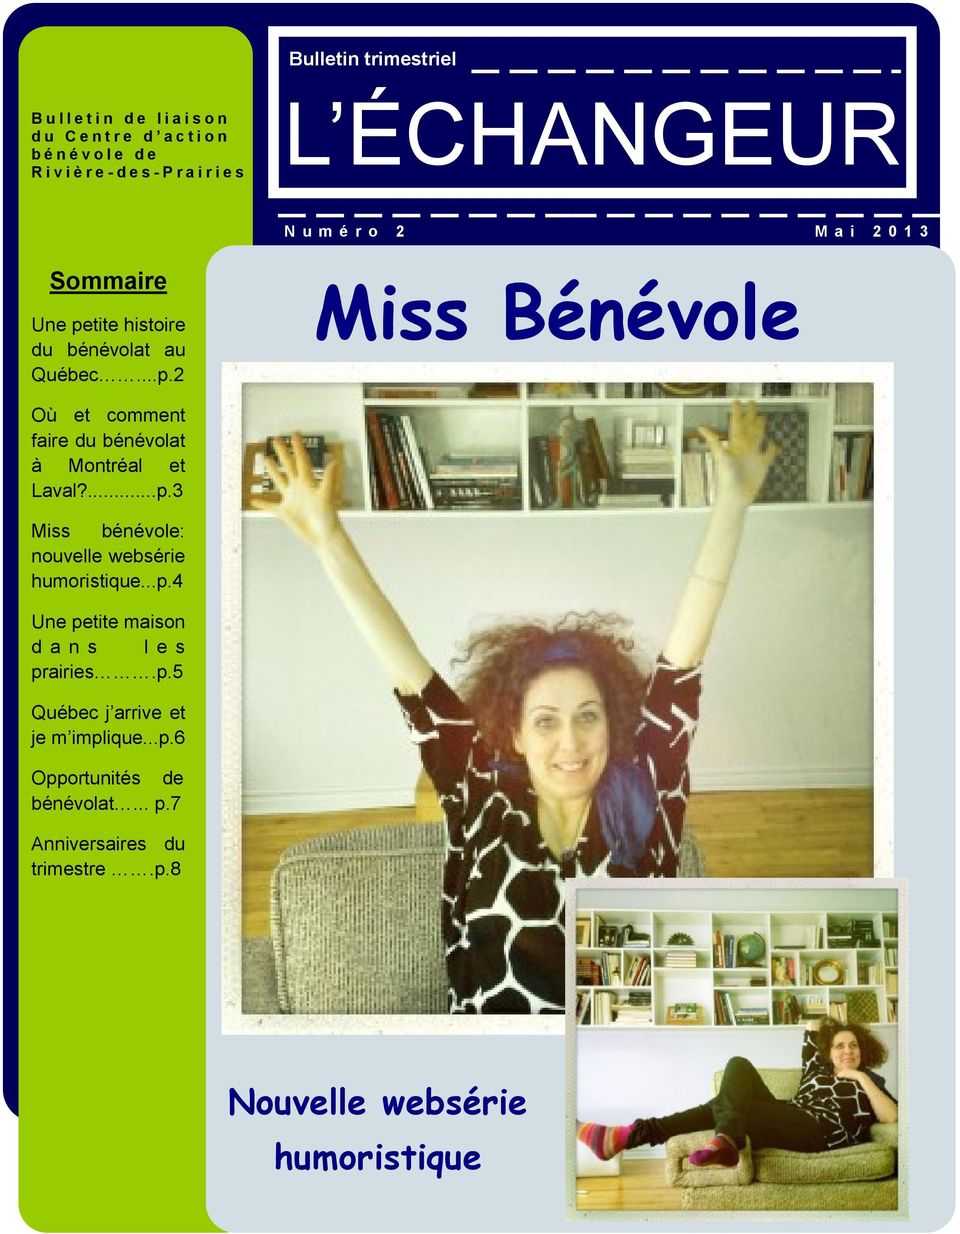 ...p.3 Miss bénévole: nouvelle websérie humoristique...p.4 Une petite maison d a n s l e s prairies.p.5 Québec j arrive et je m implique.